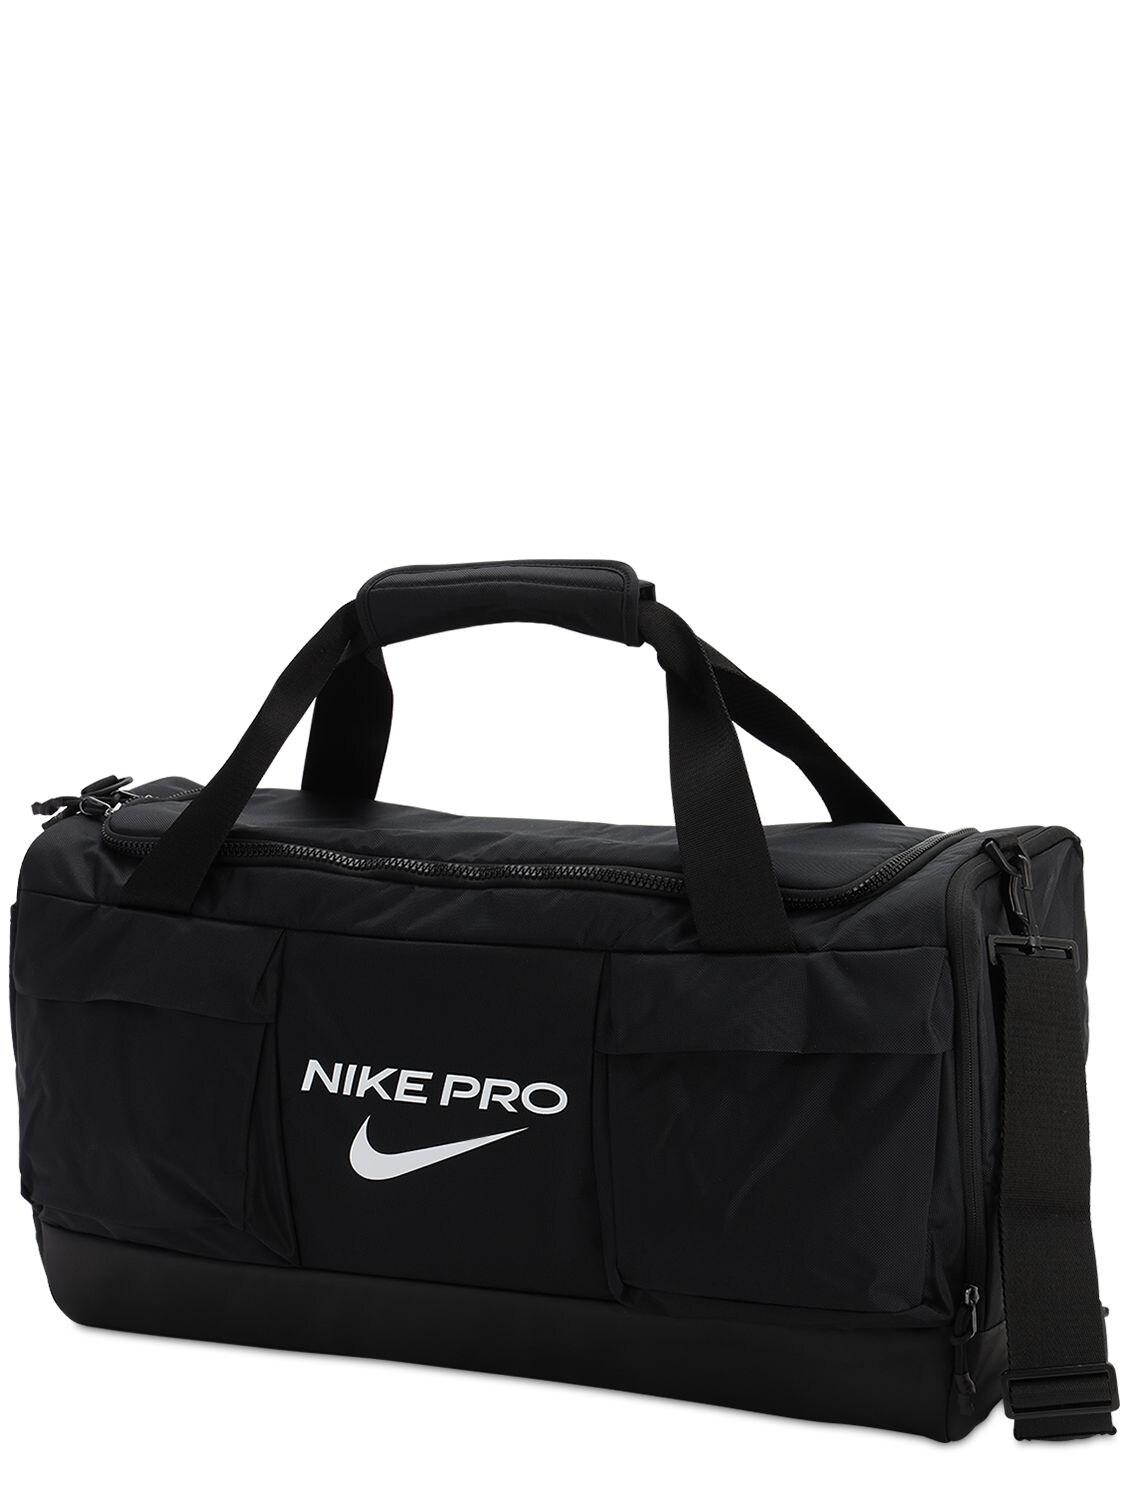 Nike Pro Vapor Power Medium Duffle Bag in Black for Men - Lyst